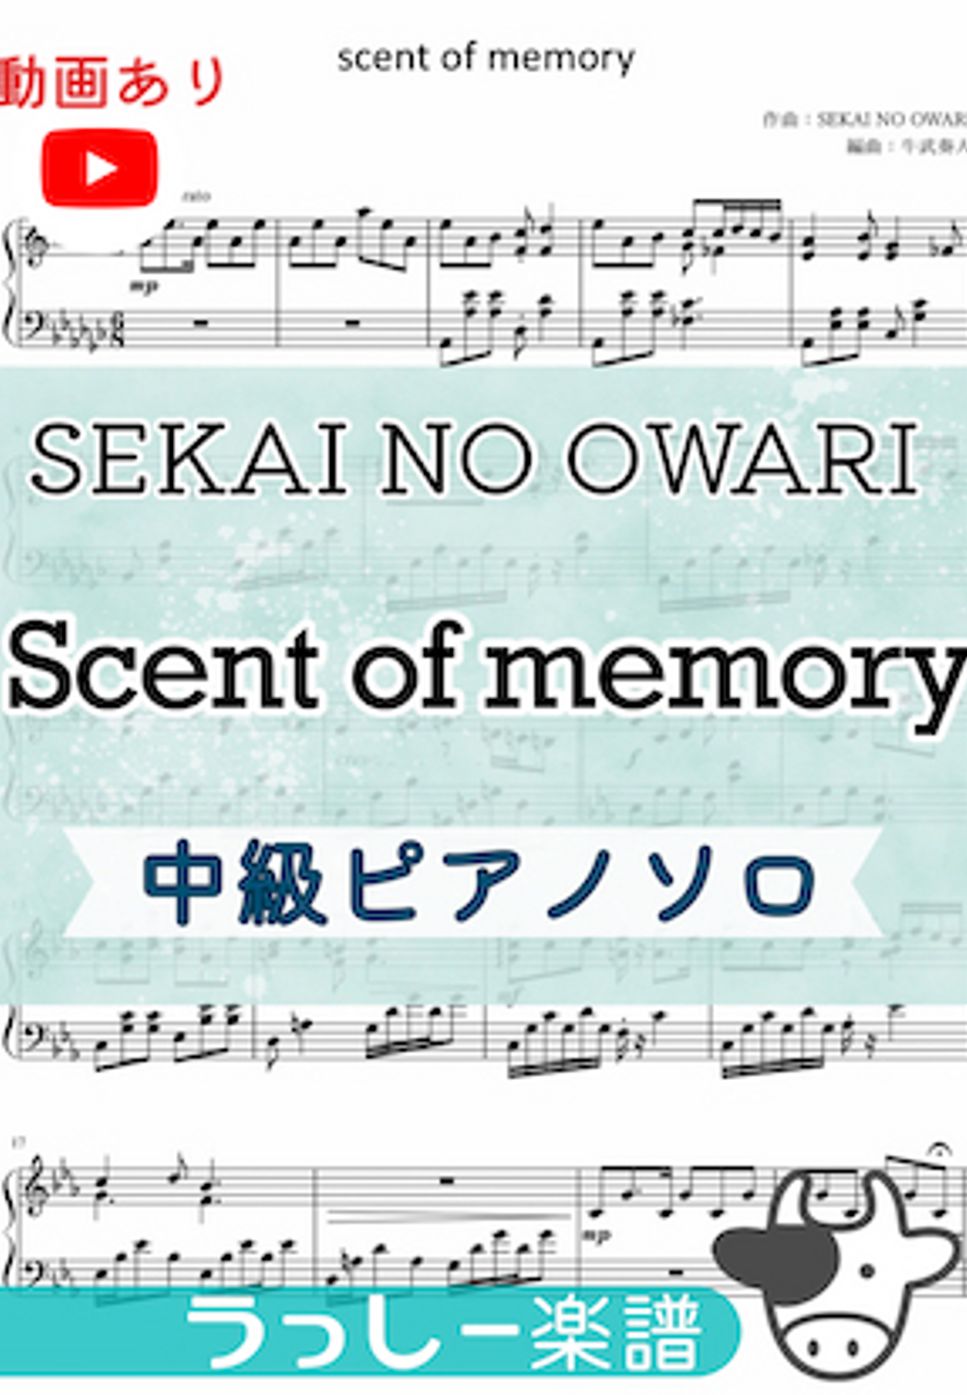 SEKAI NO OWARI scent of memory